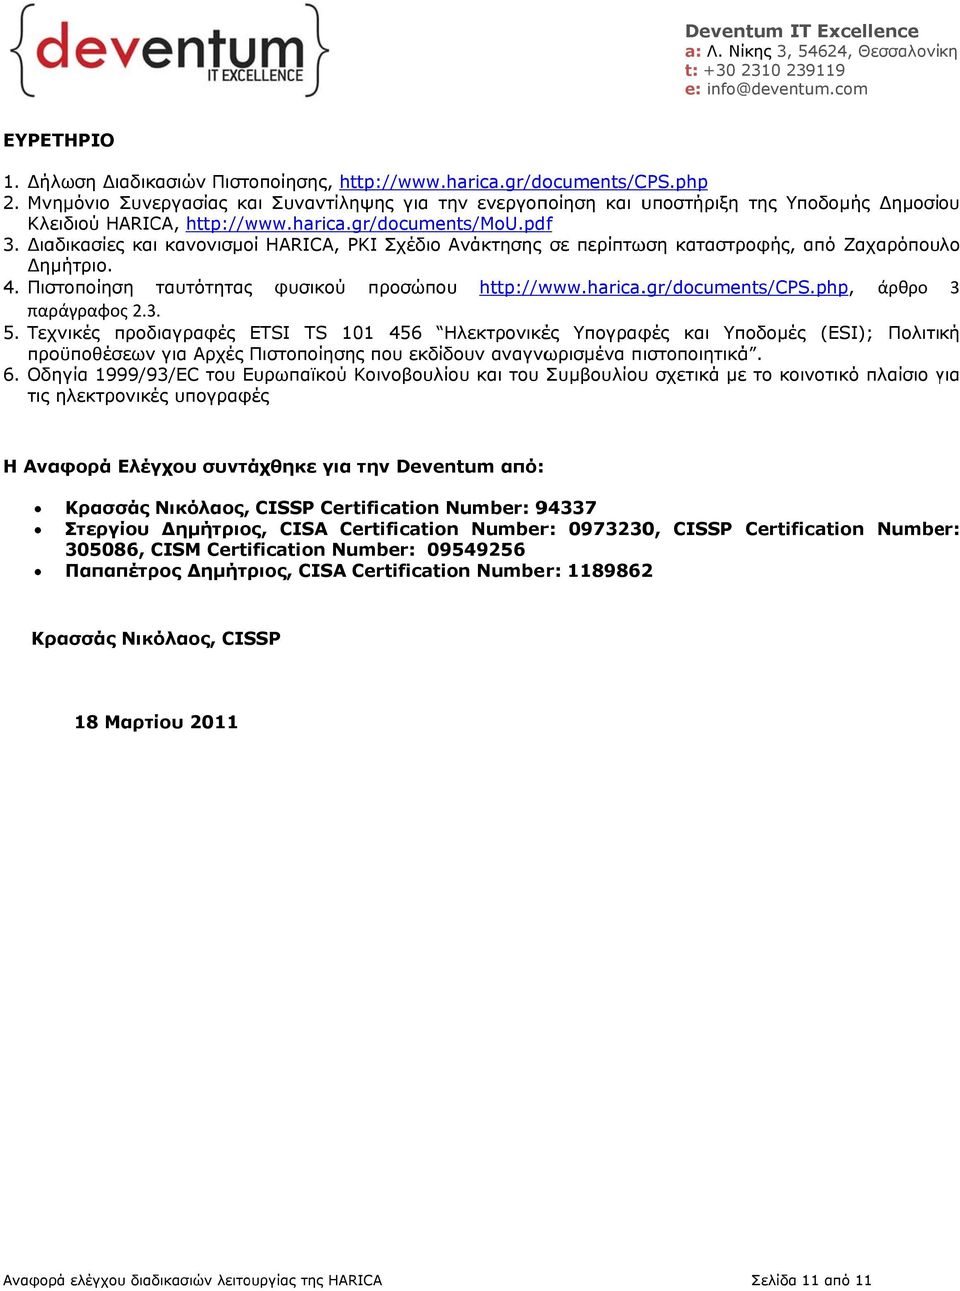 Διαδικασίες και κανονισμοί HARICA, PKI Σχέδιο Ανάκτησης σε περίπτωση καταστροφής, από Ζαχαρόπουλο Δημήτριο. 4. Πιστοποίηση ταυτότητας φυσικού προσώπου http://www.harica..gr/documents/cps.